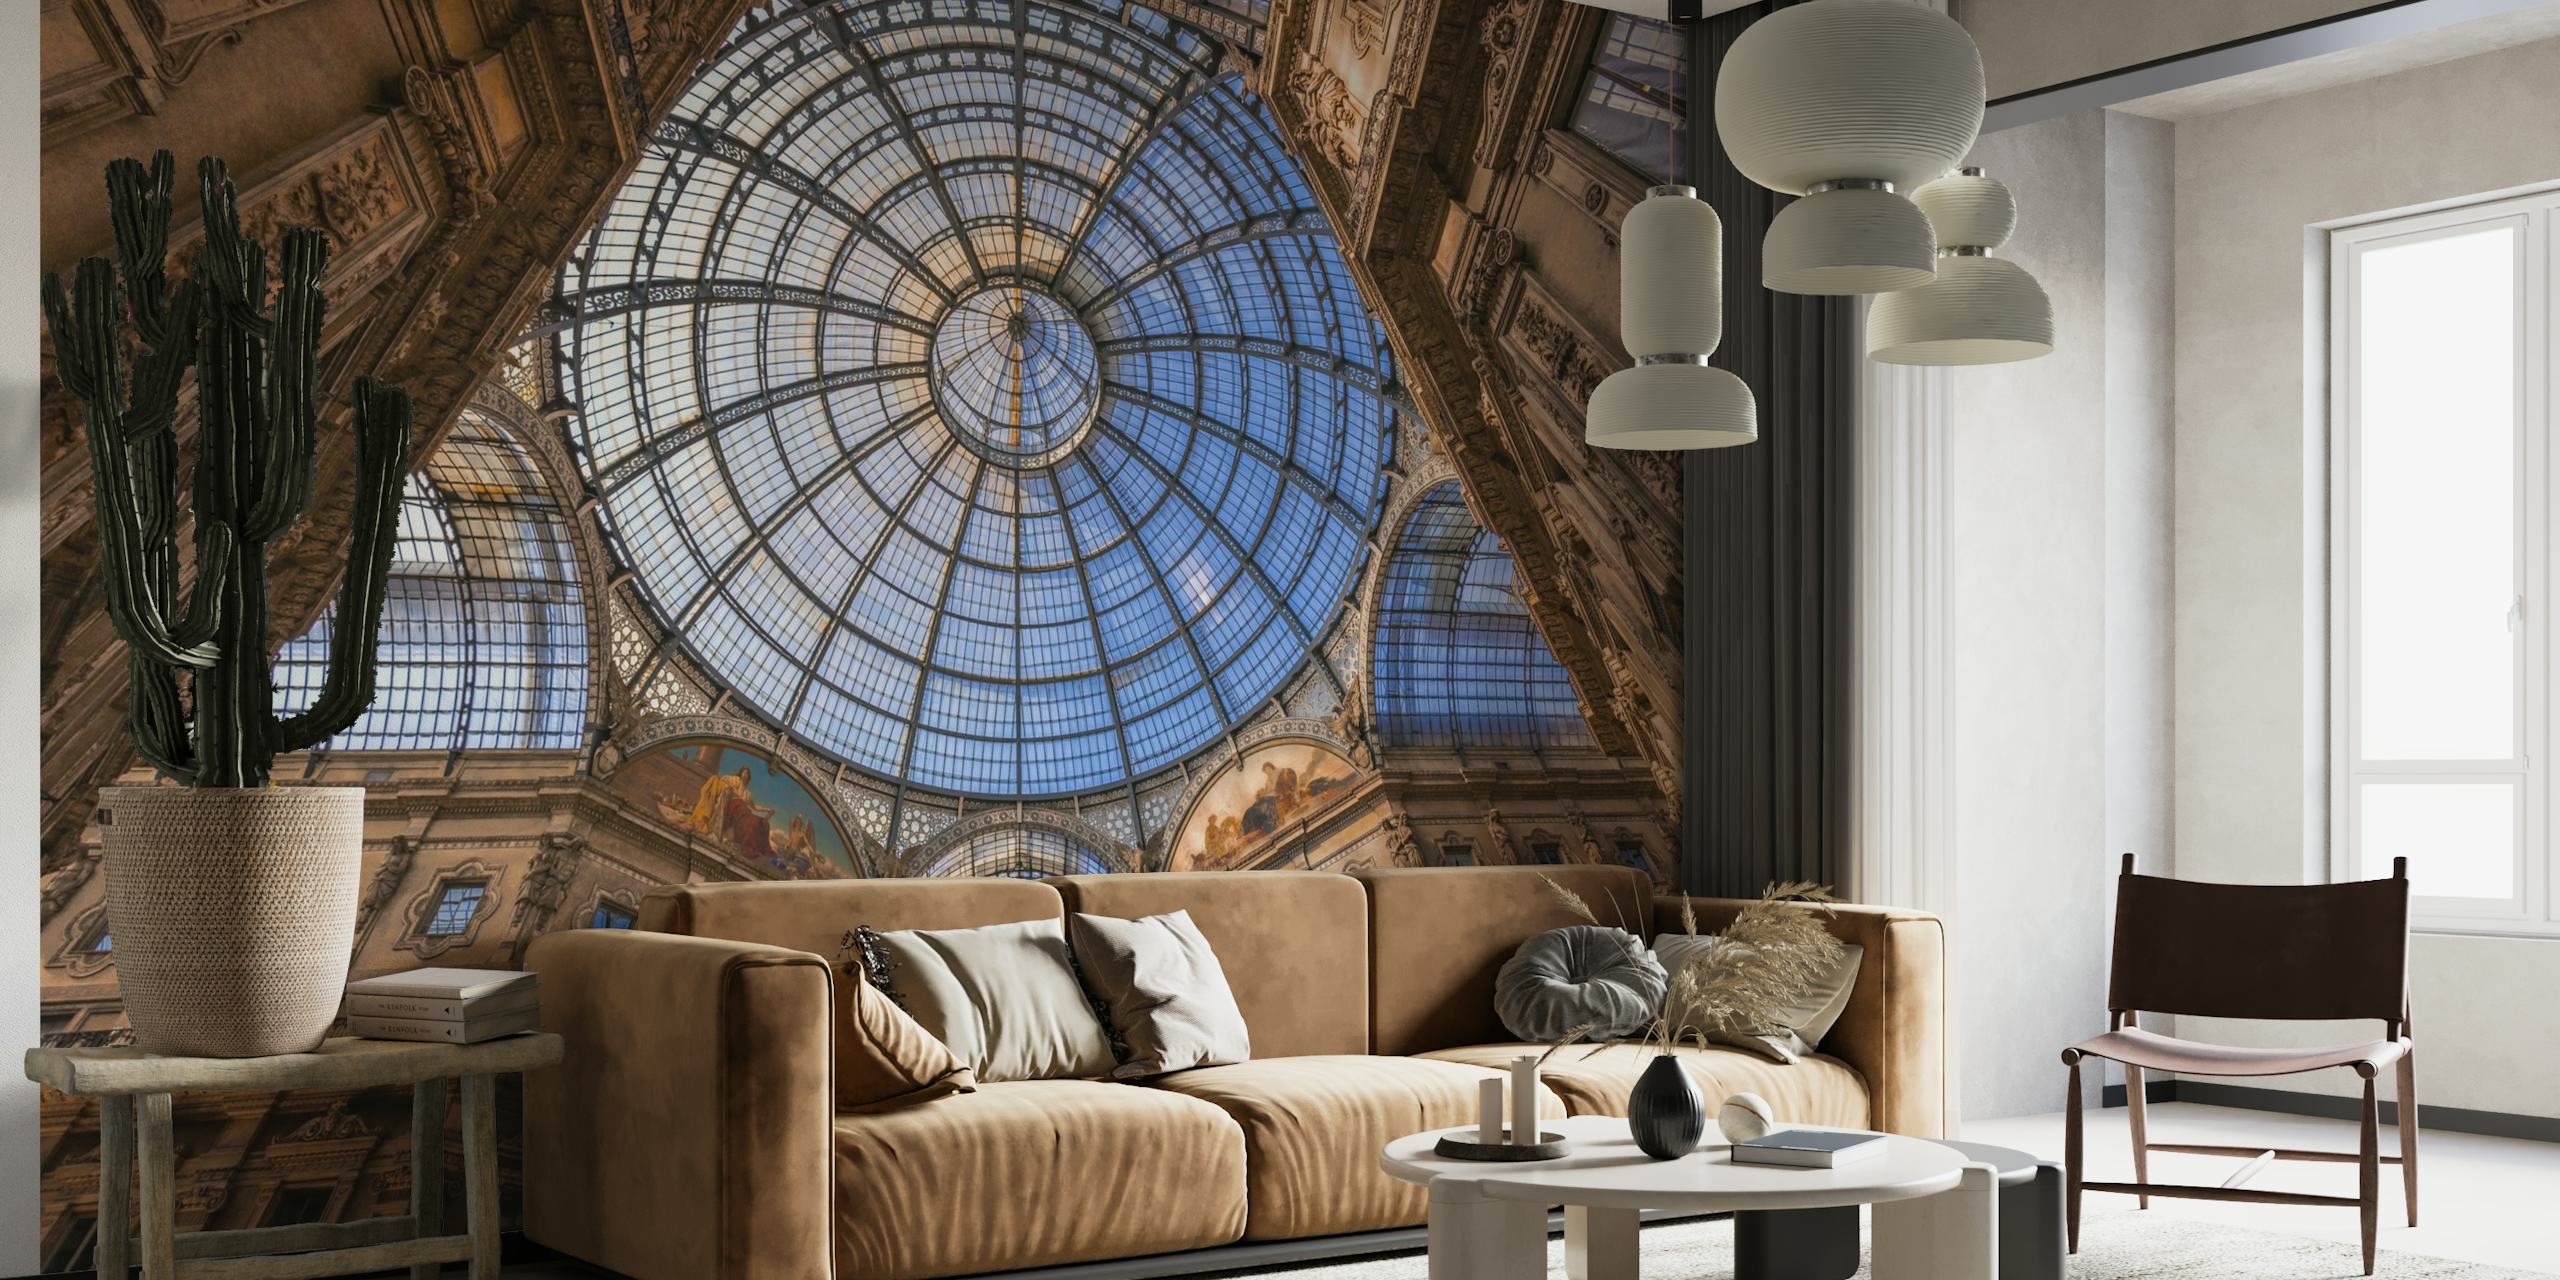 Arhitektonski stropni mural s kupolom u nijansama plave i bež boje, koji uljepšava dekor sobe s veličanstvenim dodirom.